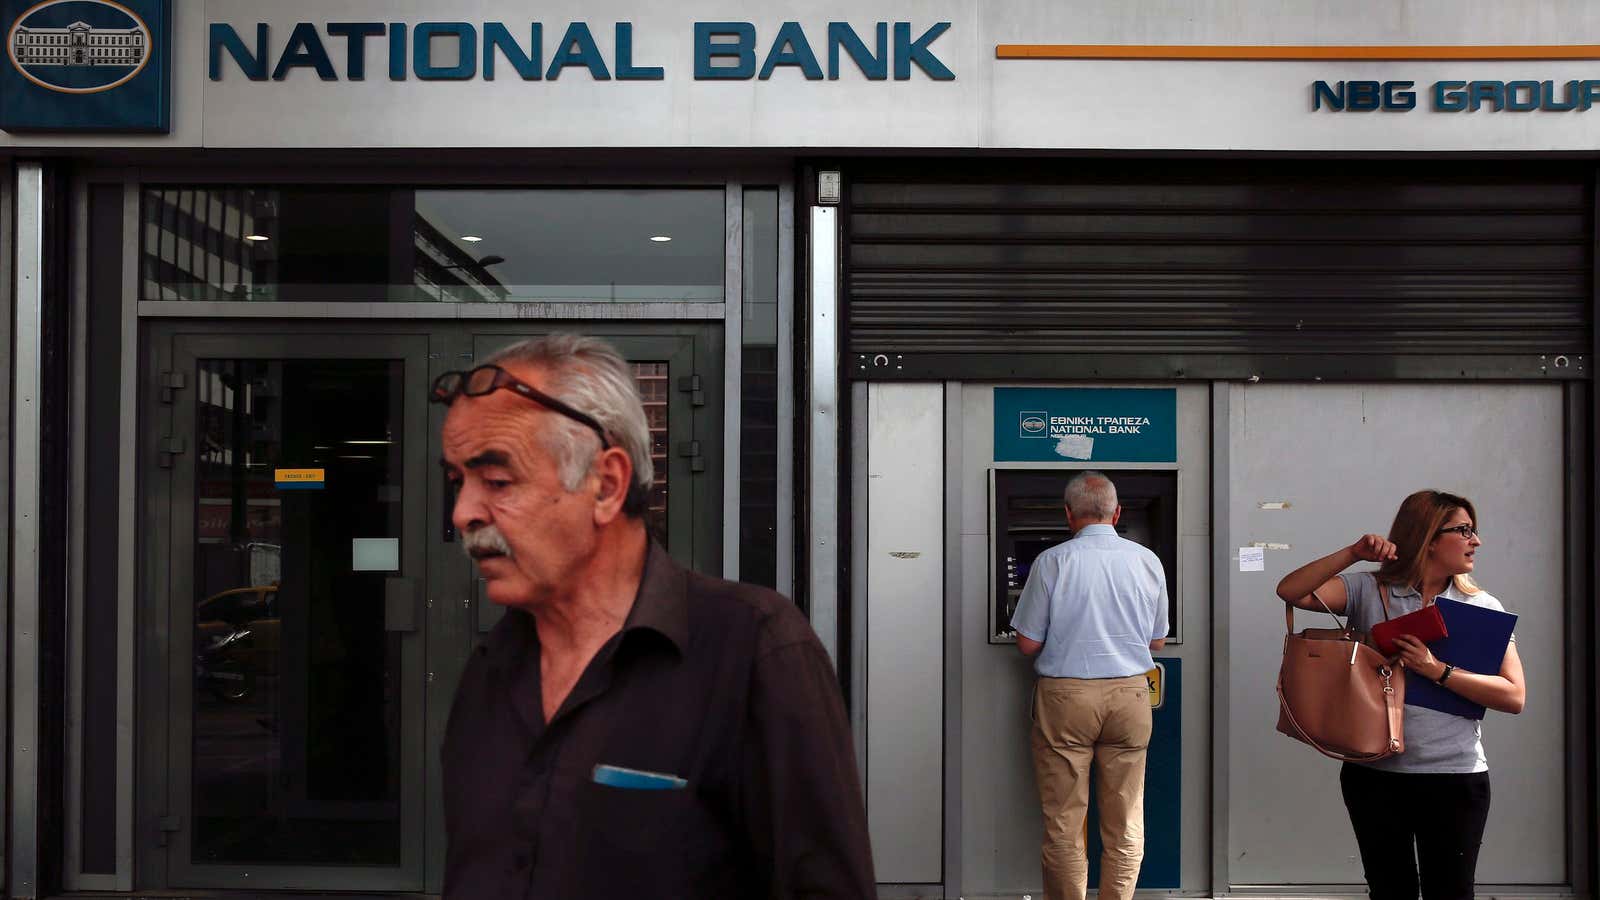 Non-banks give banks a run for their money.